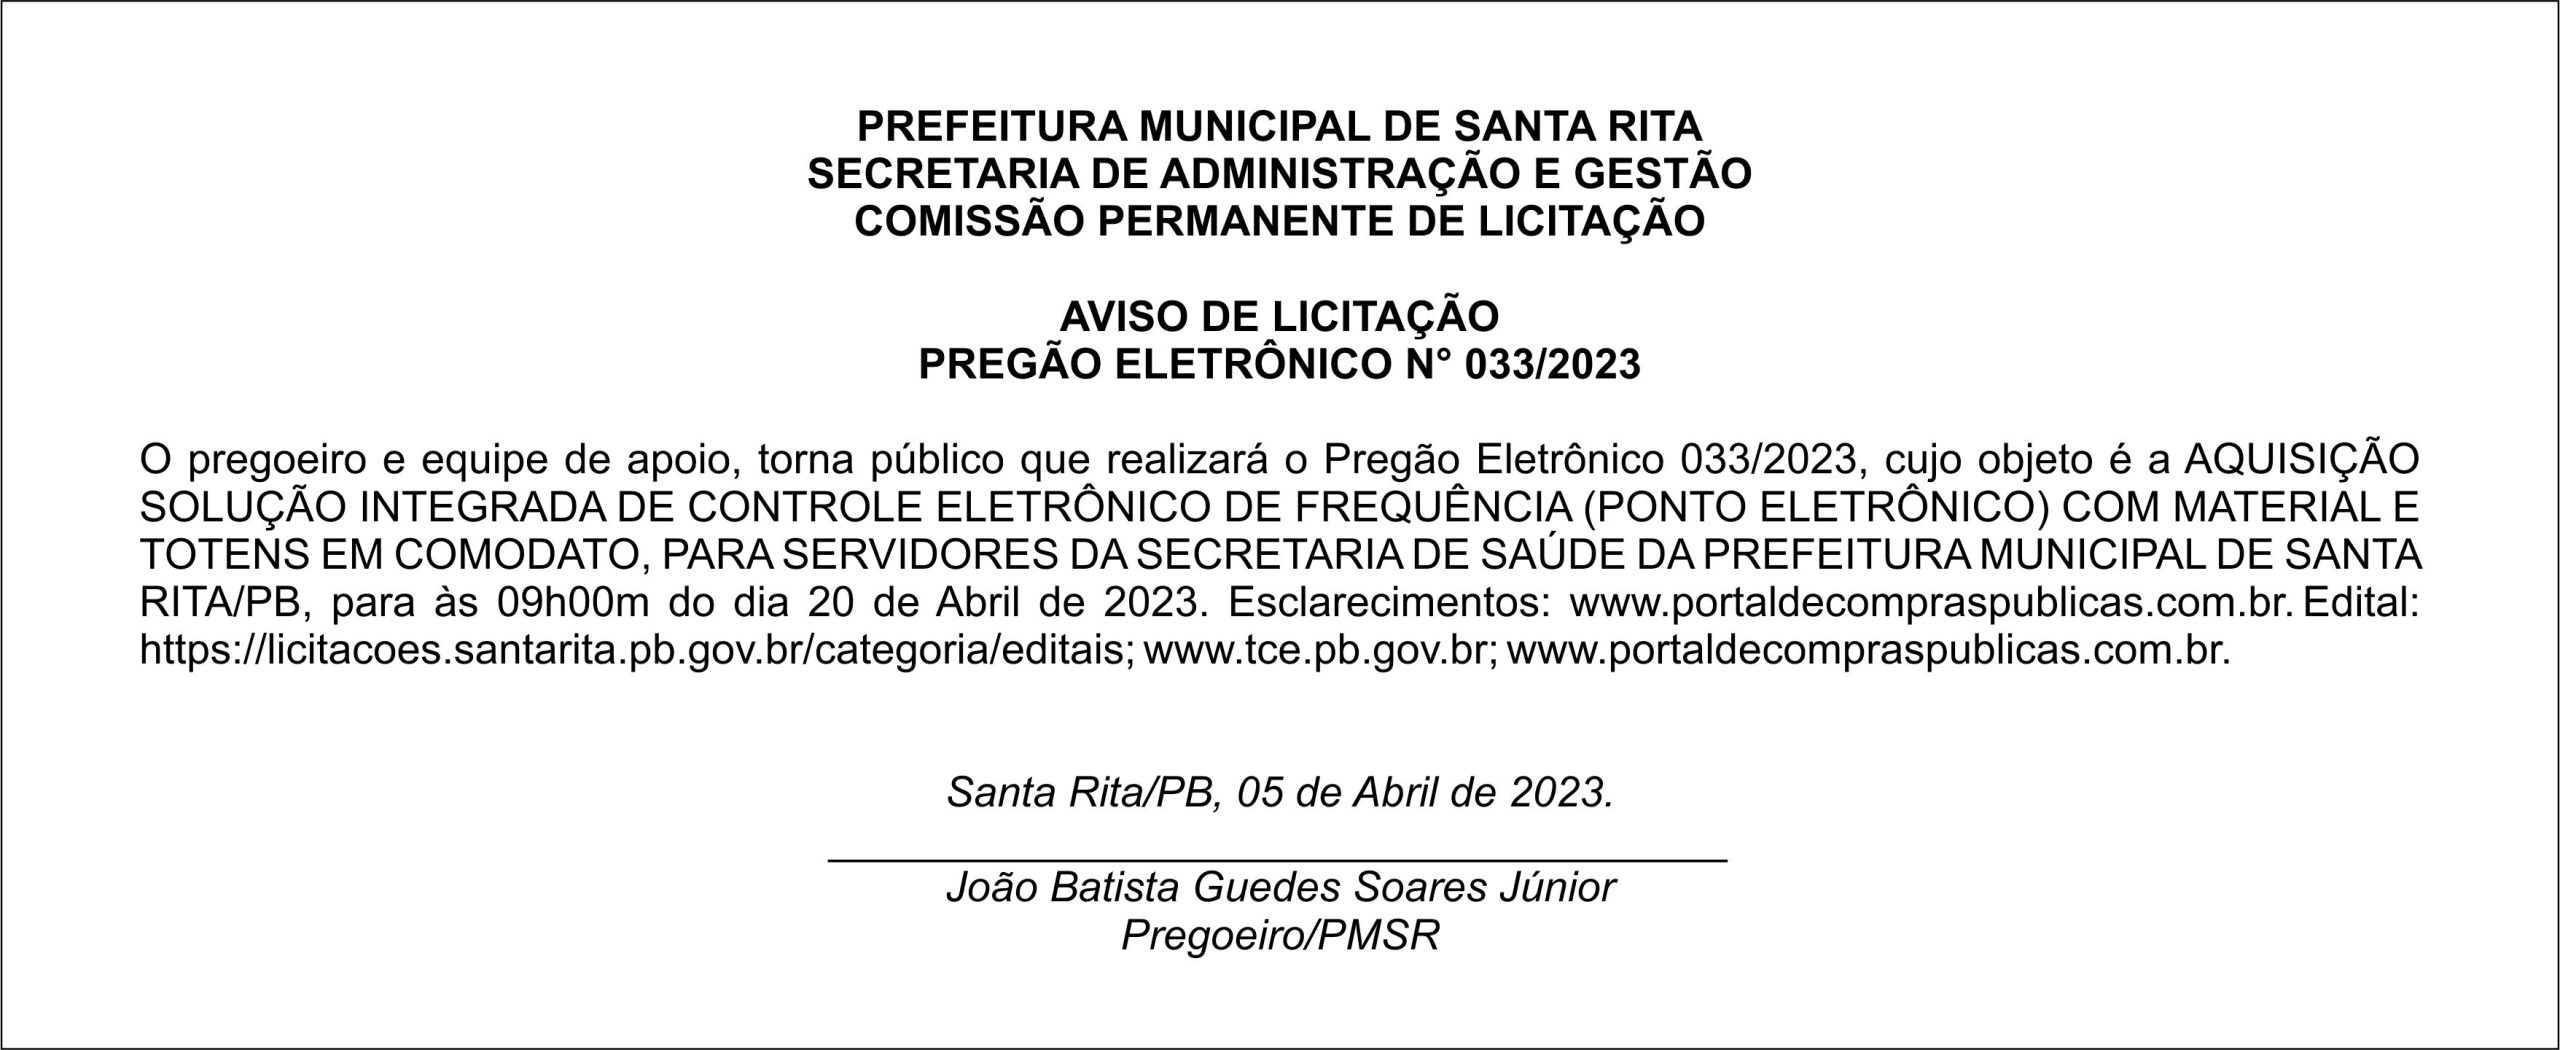 PREFEITURA MUNICIPAL DE SANTA RITA – AVISO DE LICITAÇÃO – PREGÃO ELETRÔNICO N° 033/2023